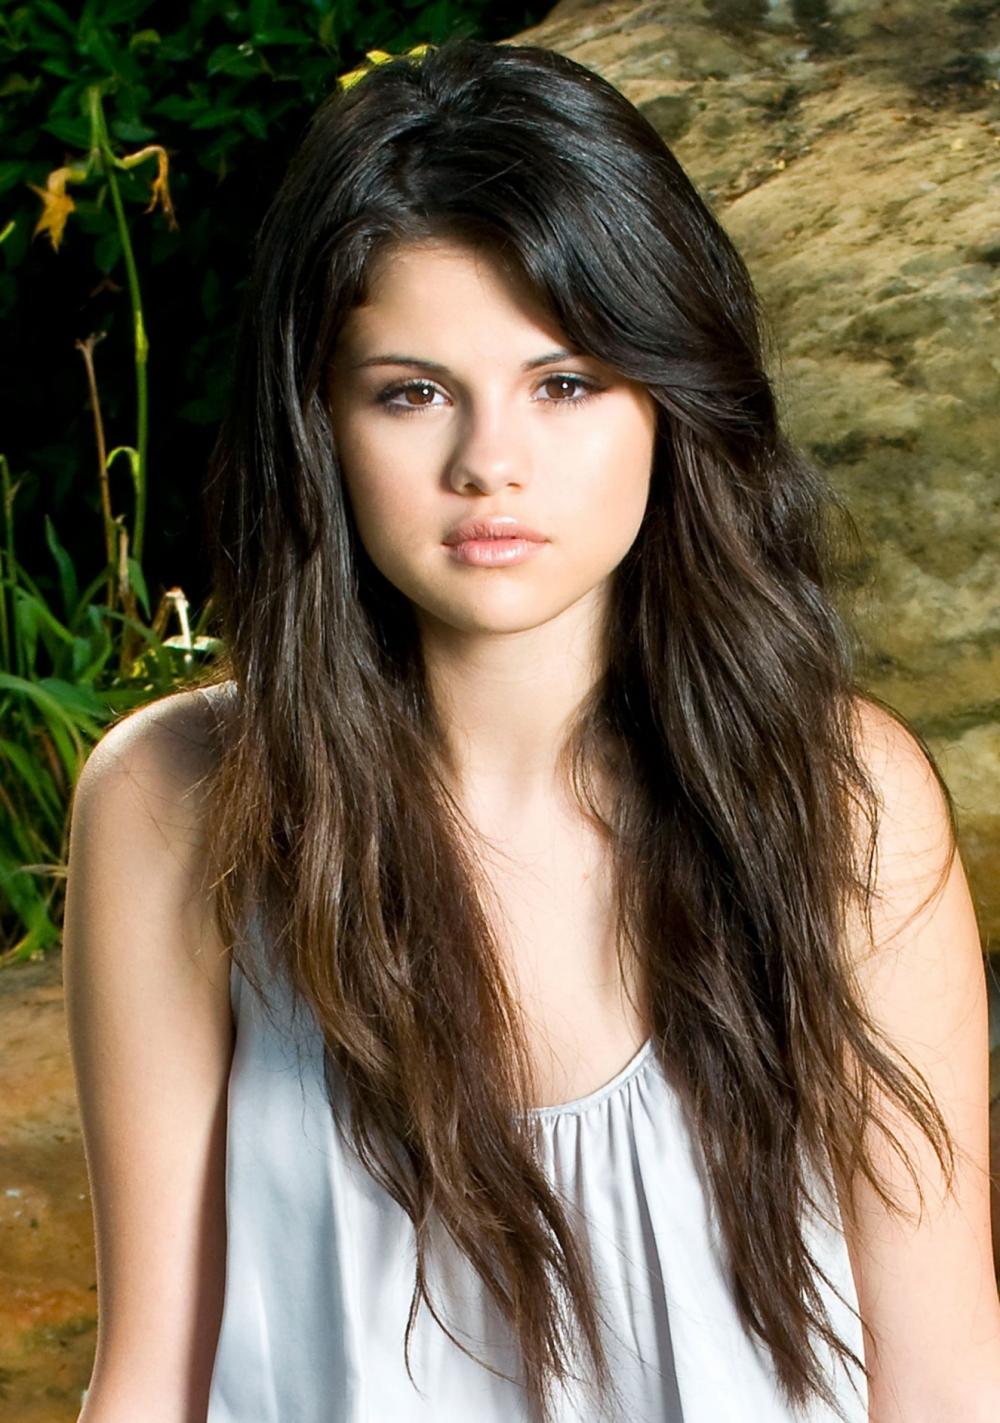 Photo №6834 Selena Gomez.